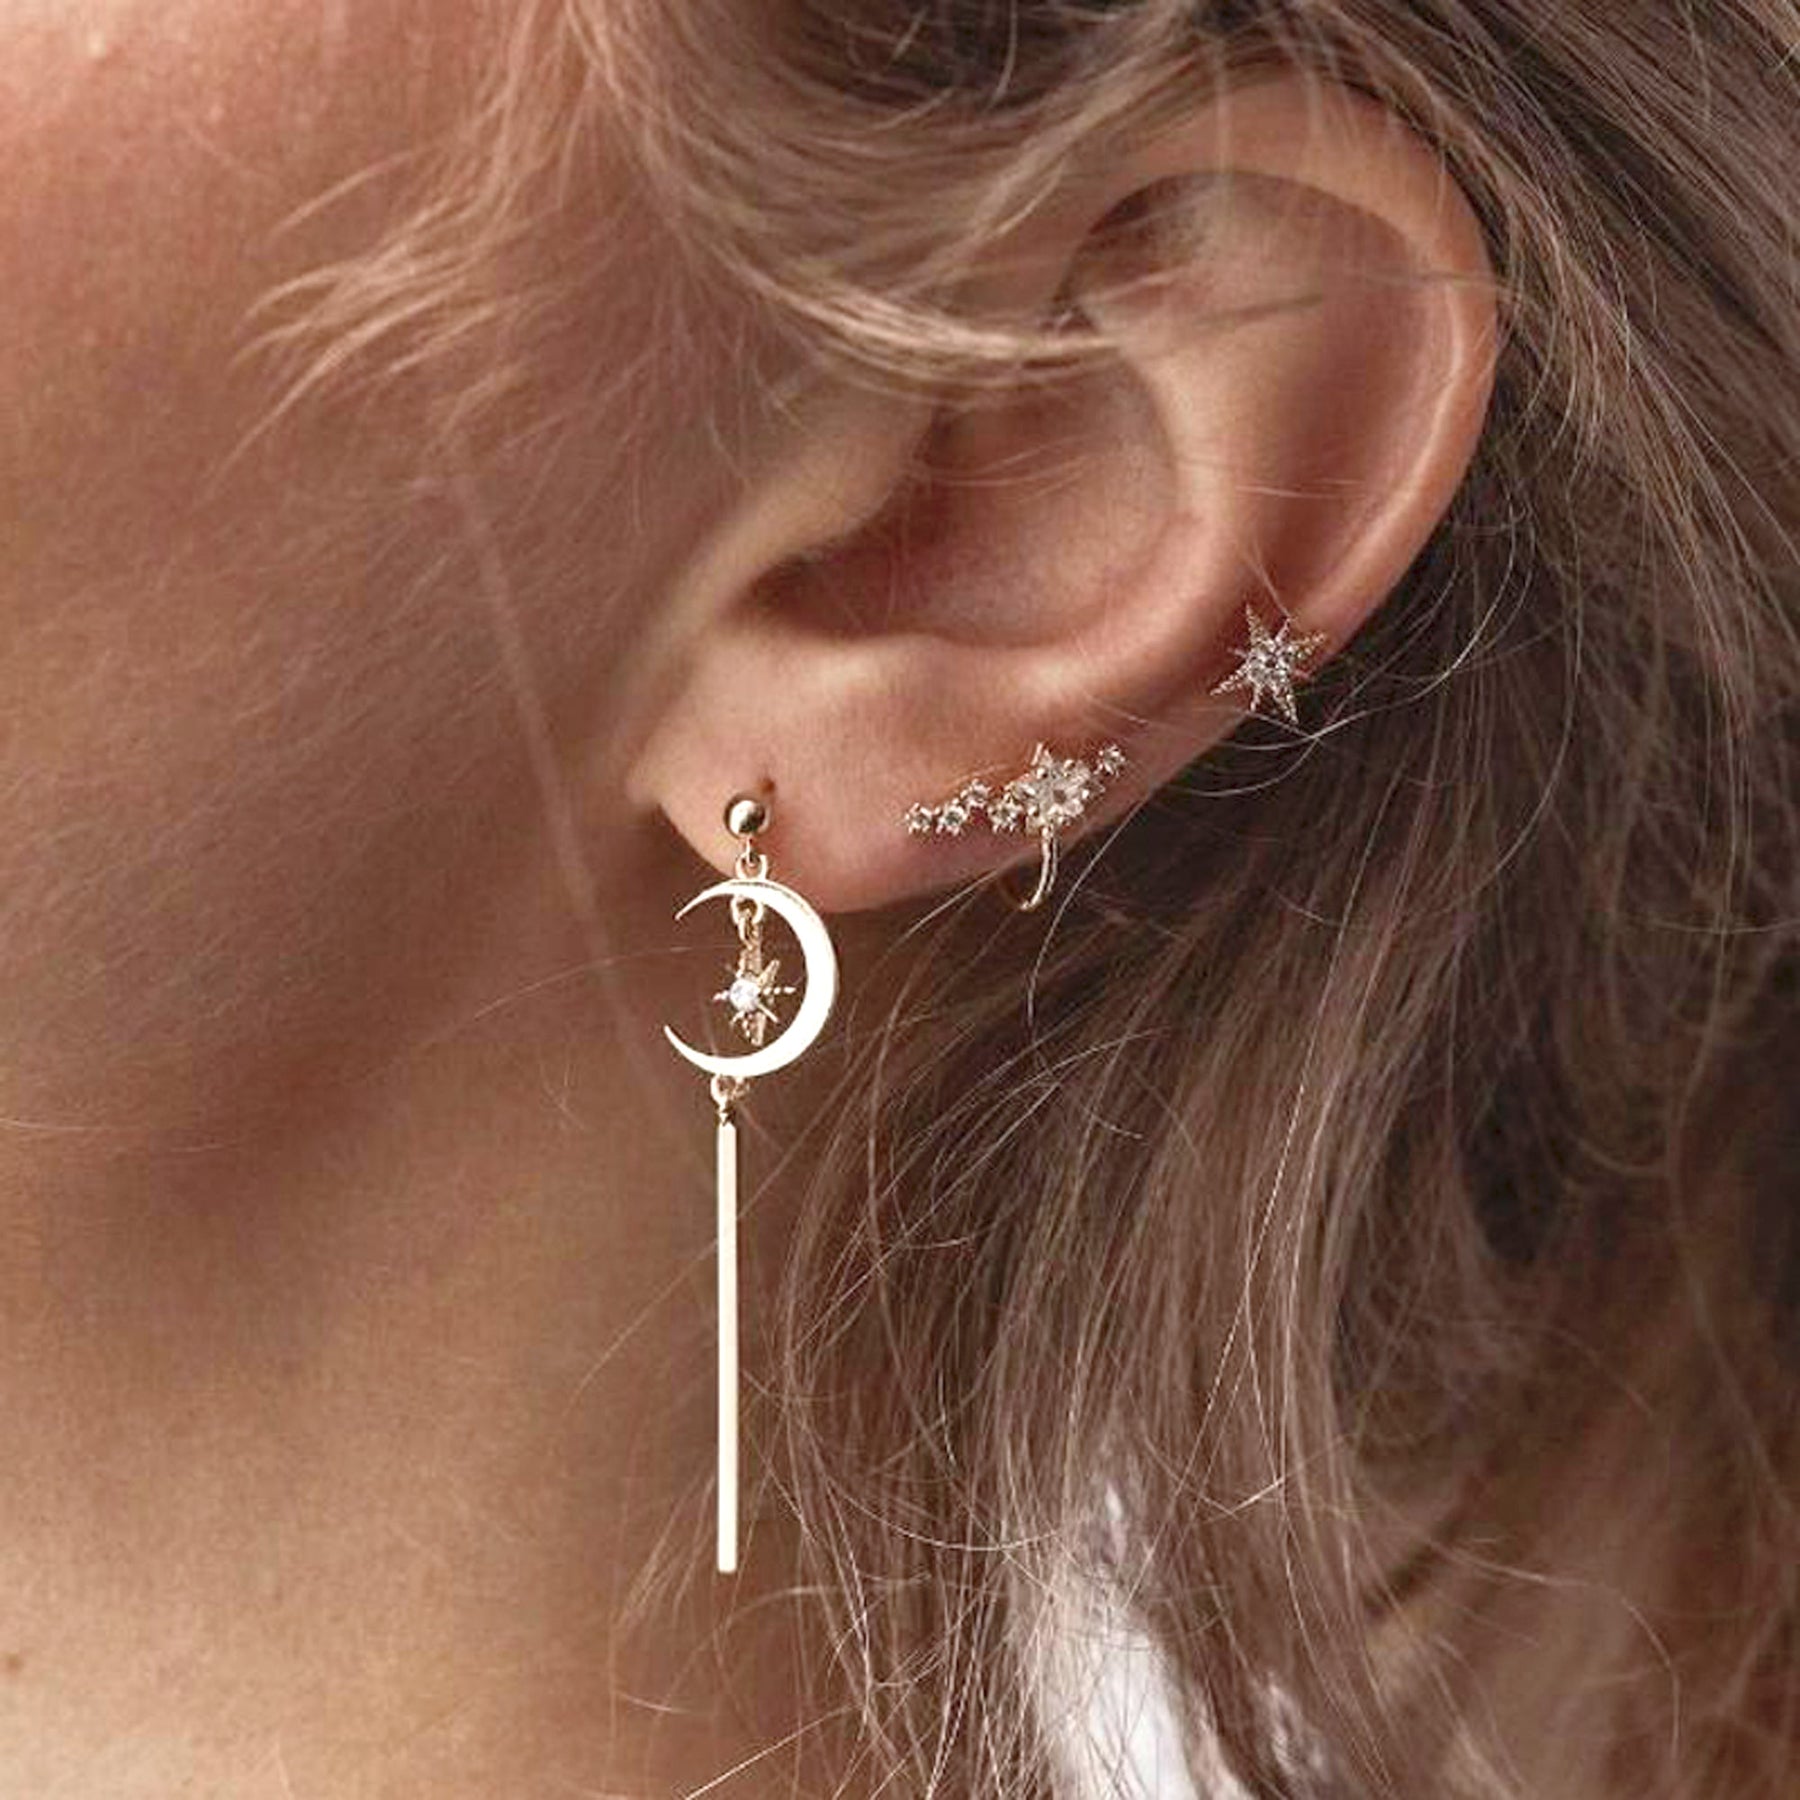 Are Those Trendy Ear Piercings Helping You On A Wellness Level? | Multiple  piercings earrings, Ear jewelry, Piercings